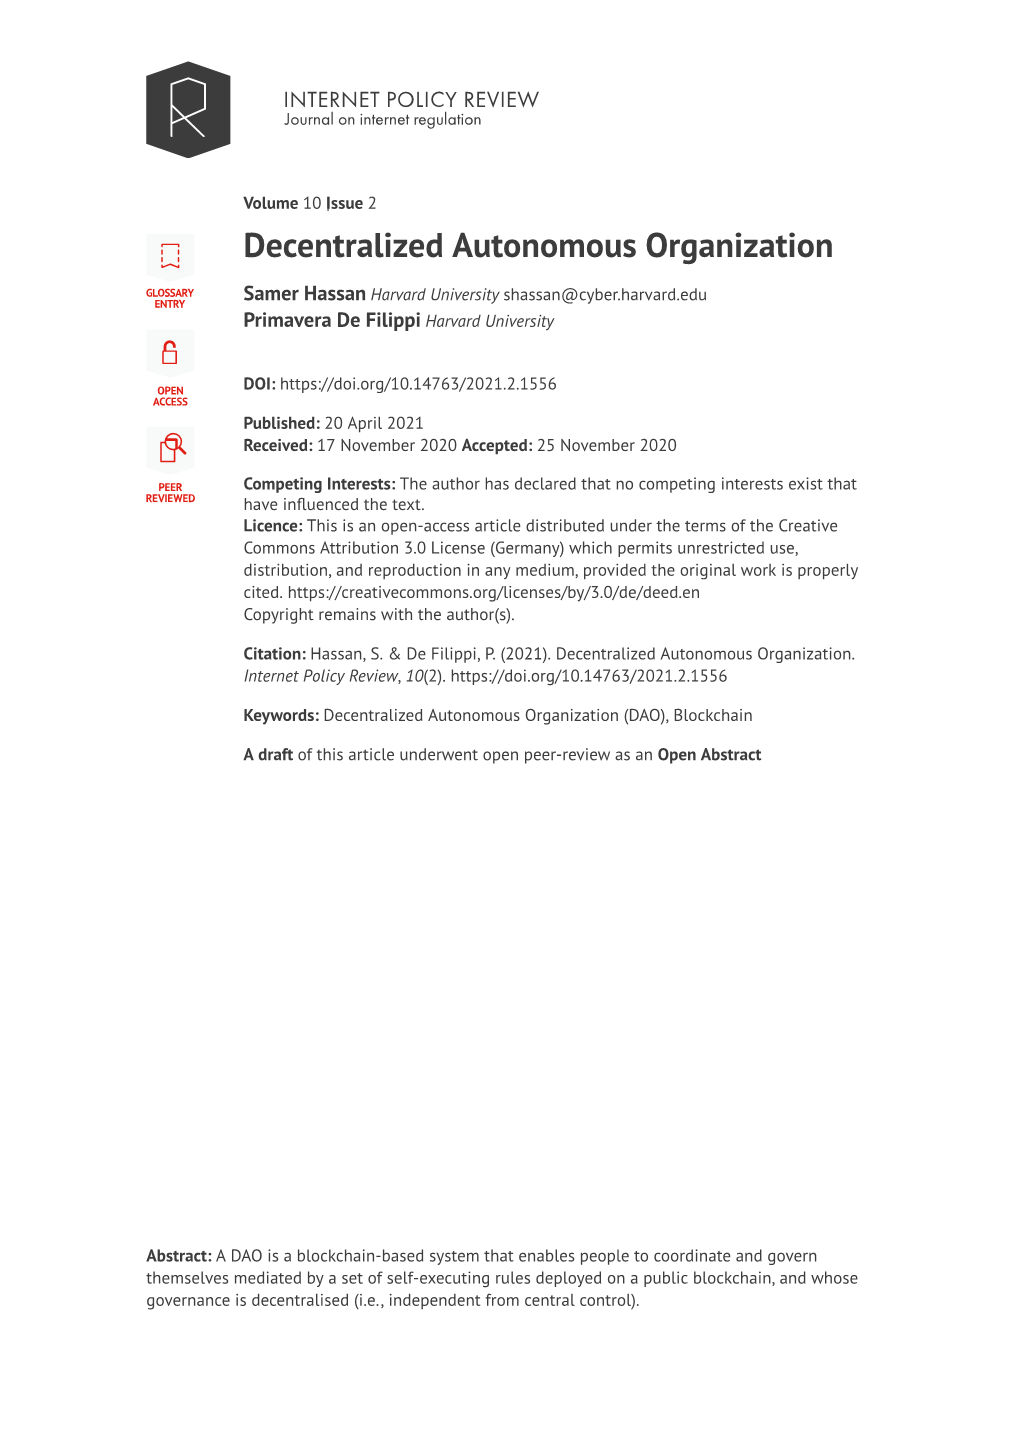 Decentralized Autonomous Organization